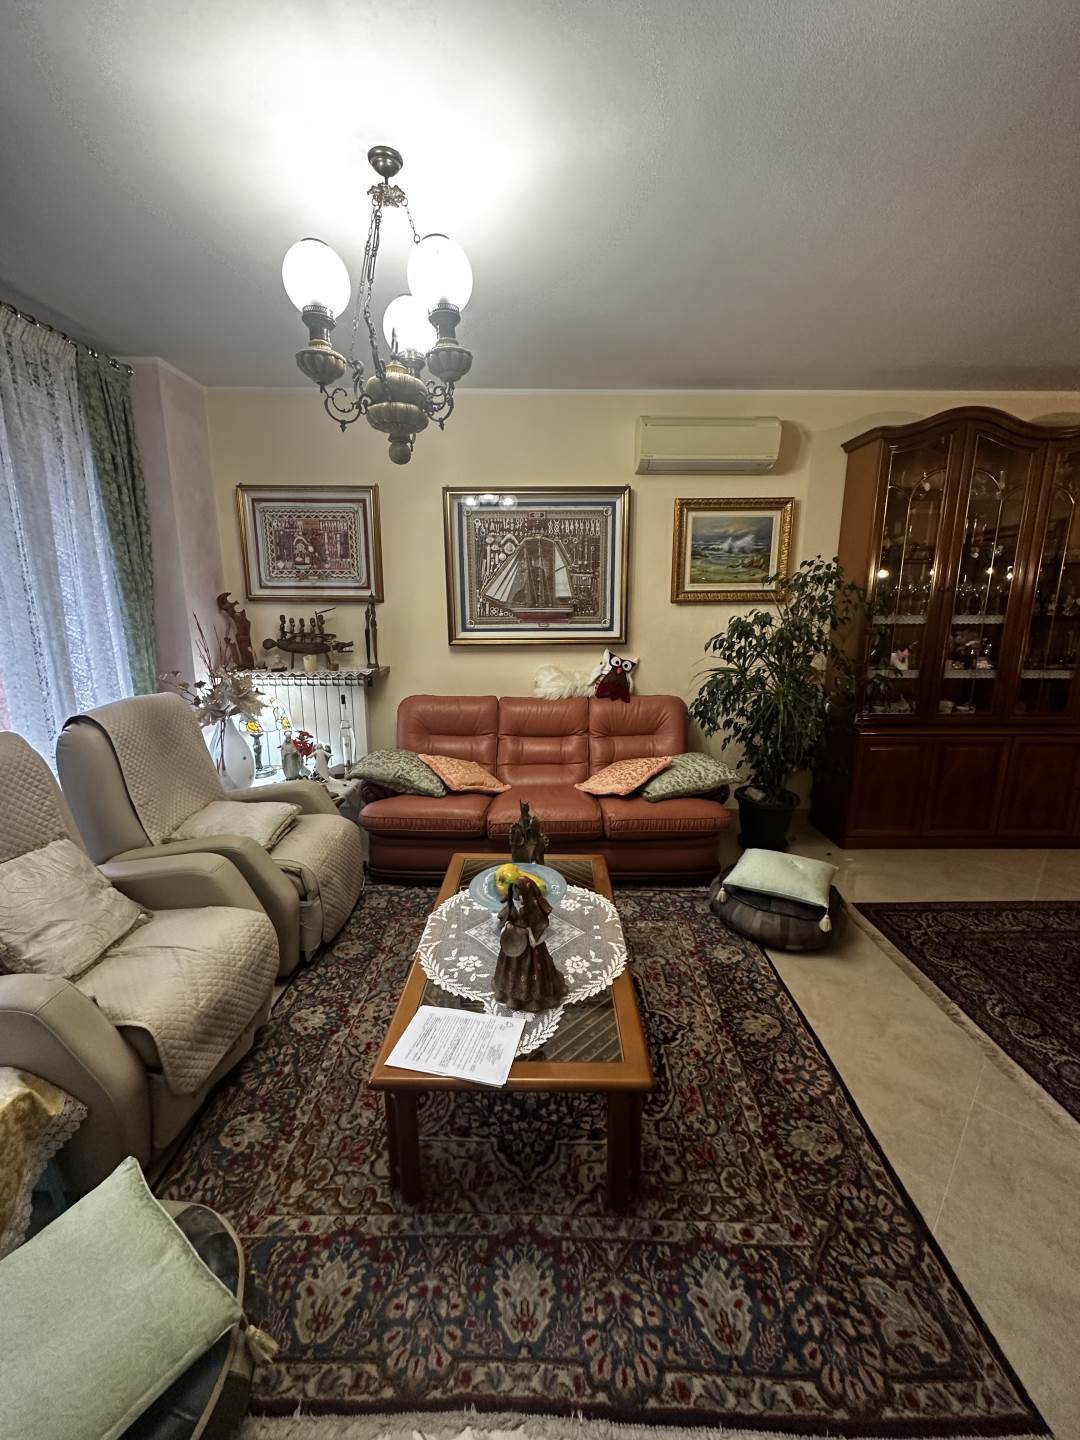 Villa in ottime condizioni a Chioggia